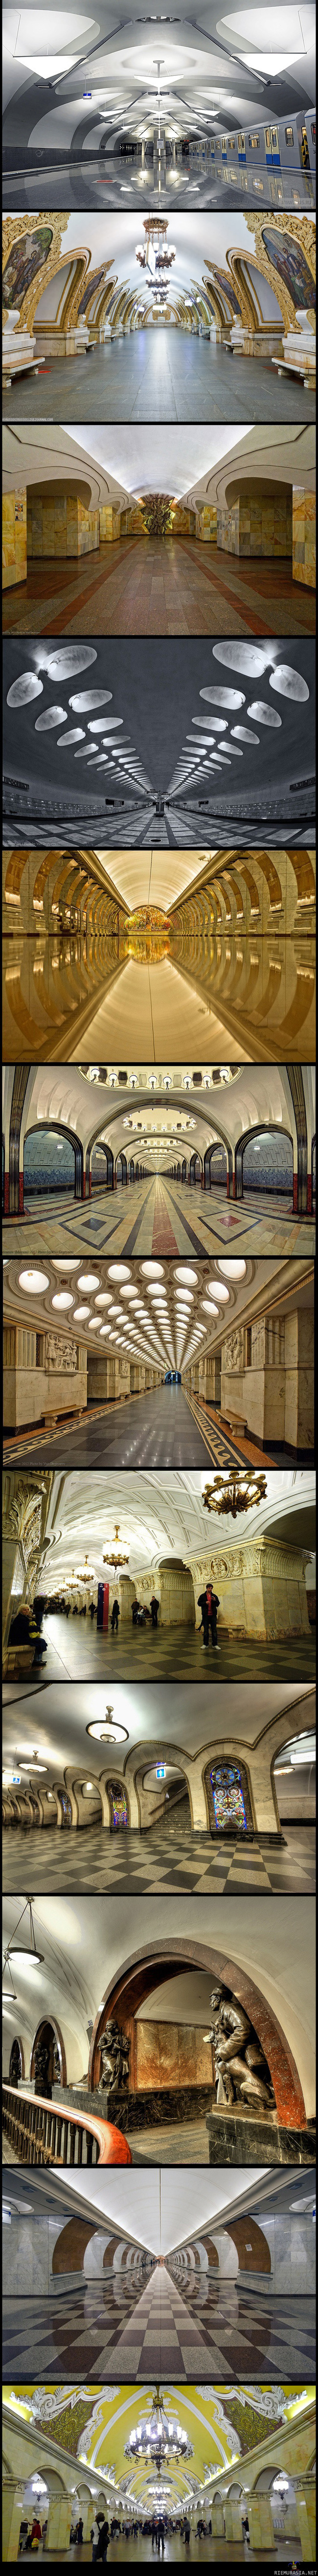 Moskovan metroasemat - Kuvia moskovan tyylikkäistä metroasemista.